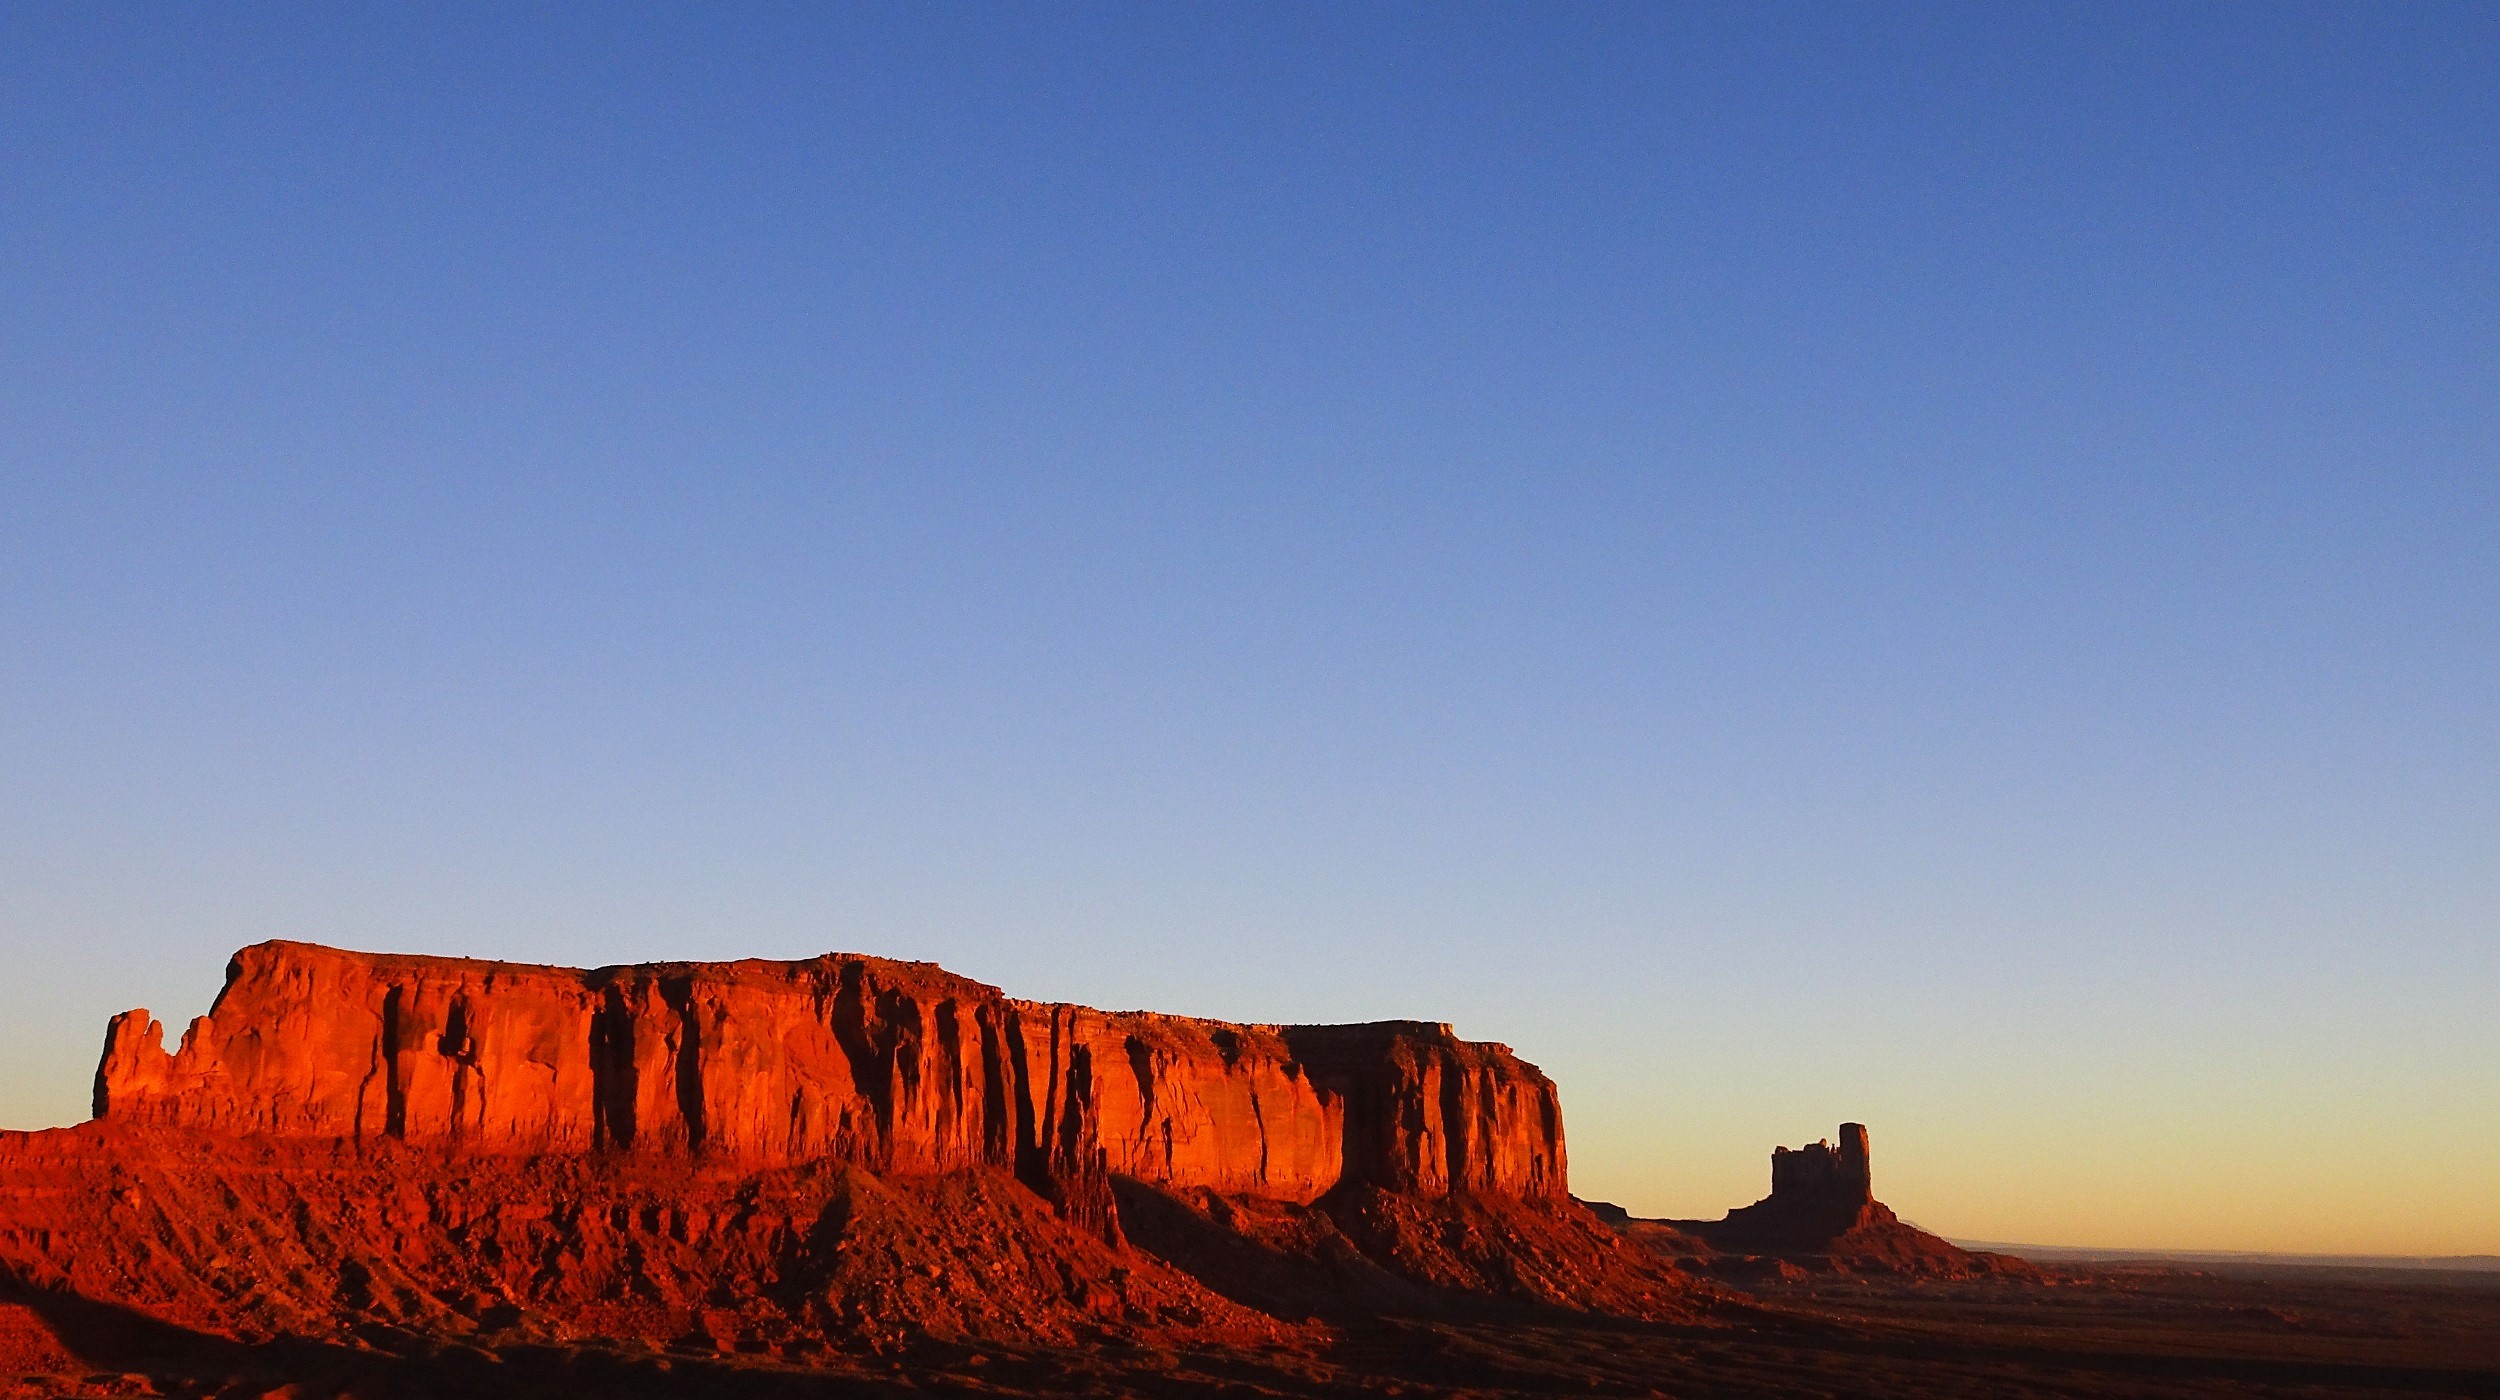 Sunrise in Monument Valley, Arizona-Utah